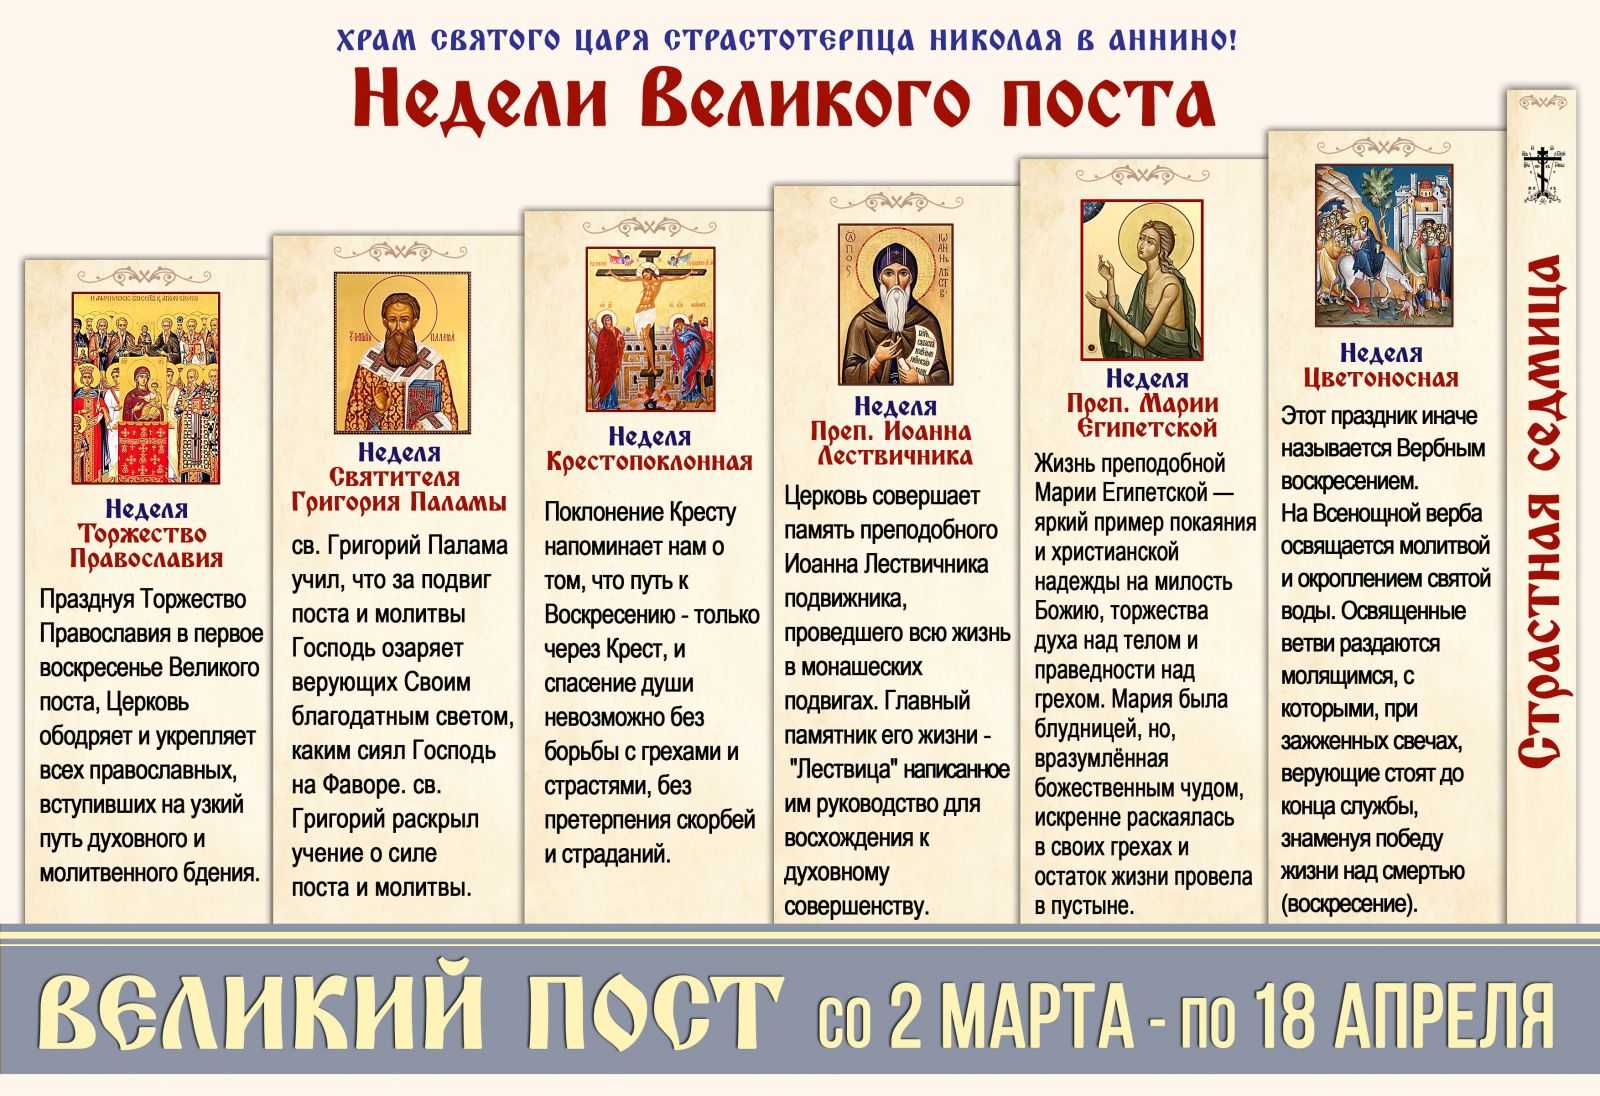 Календарь церковных праздников на март 2022 года / в этом месяце / журнал calend.ru